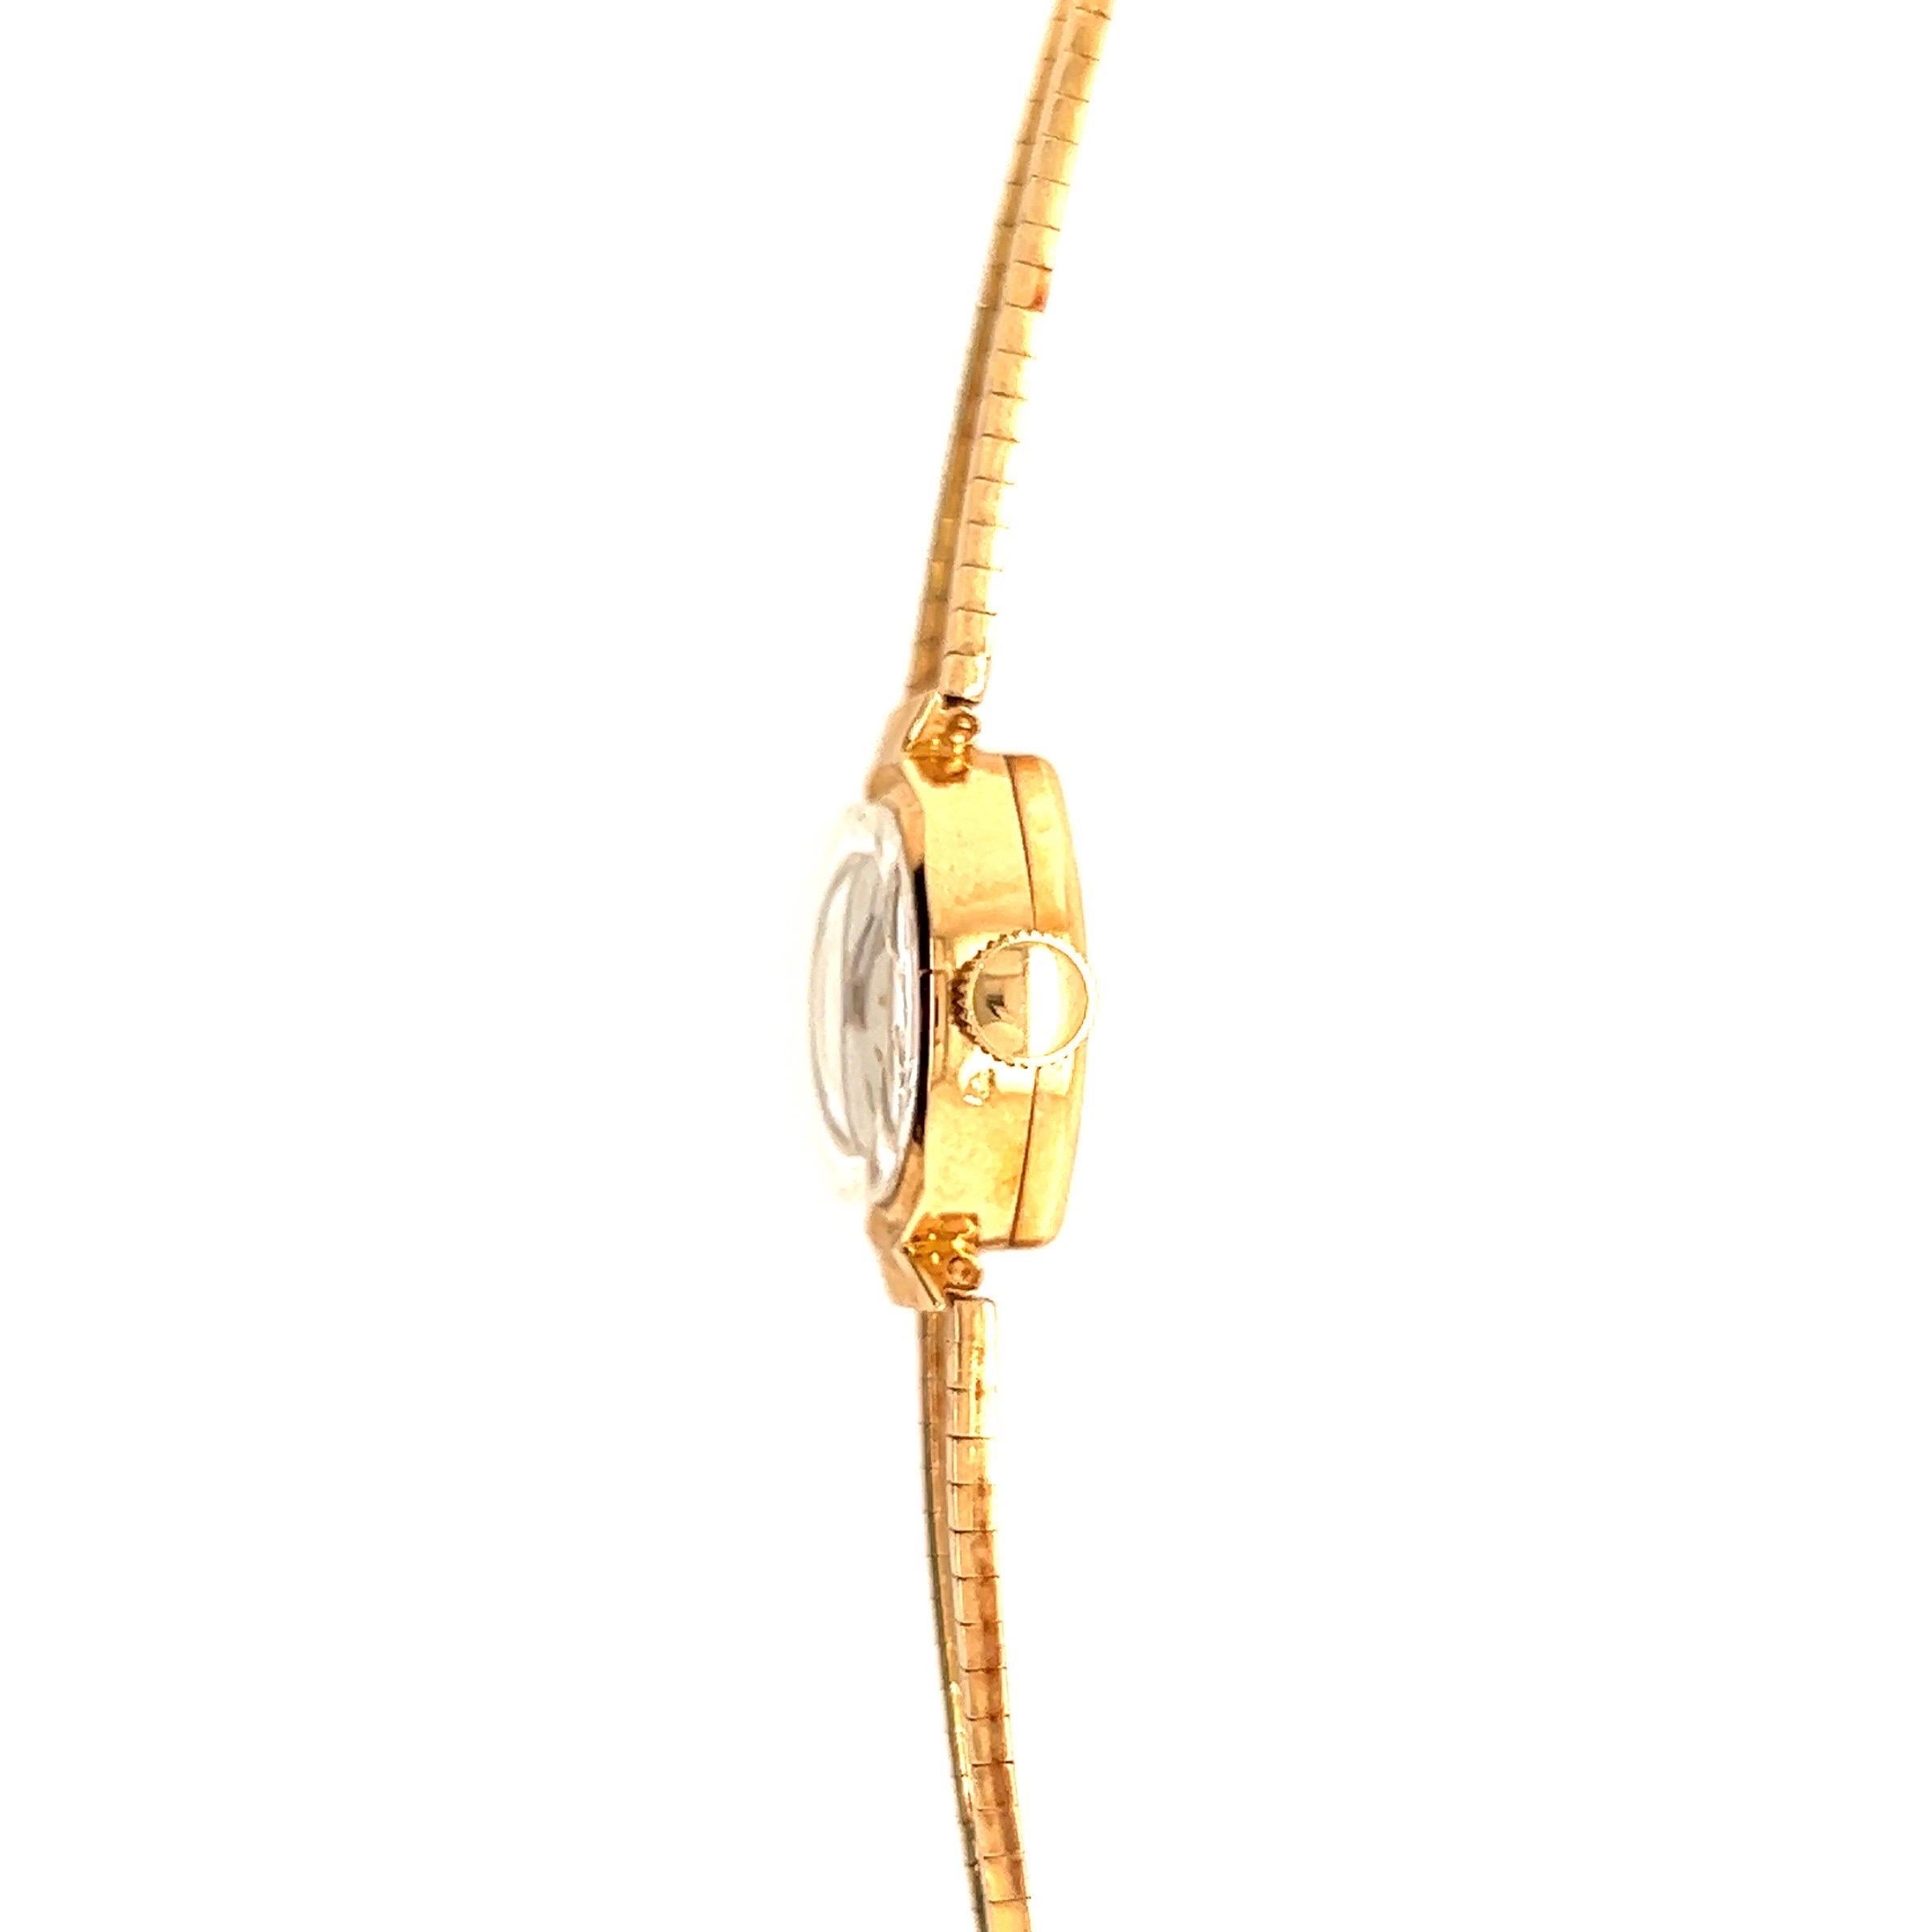 Sie suchen eine Damenarmbanduhr, die Retro-Stil und Raffinesse vereint? Die LOV-Damenarmbanduhr ist die ideale Wahl.

Diese sorgfältig gefertigte Vintage-Uhr verbindet klassische Eleganz mit einer zeitlosen Retro-Ästhetik. Diese Armbanduhr ist ein